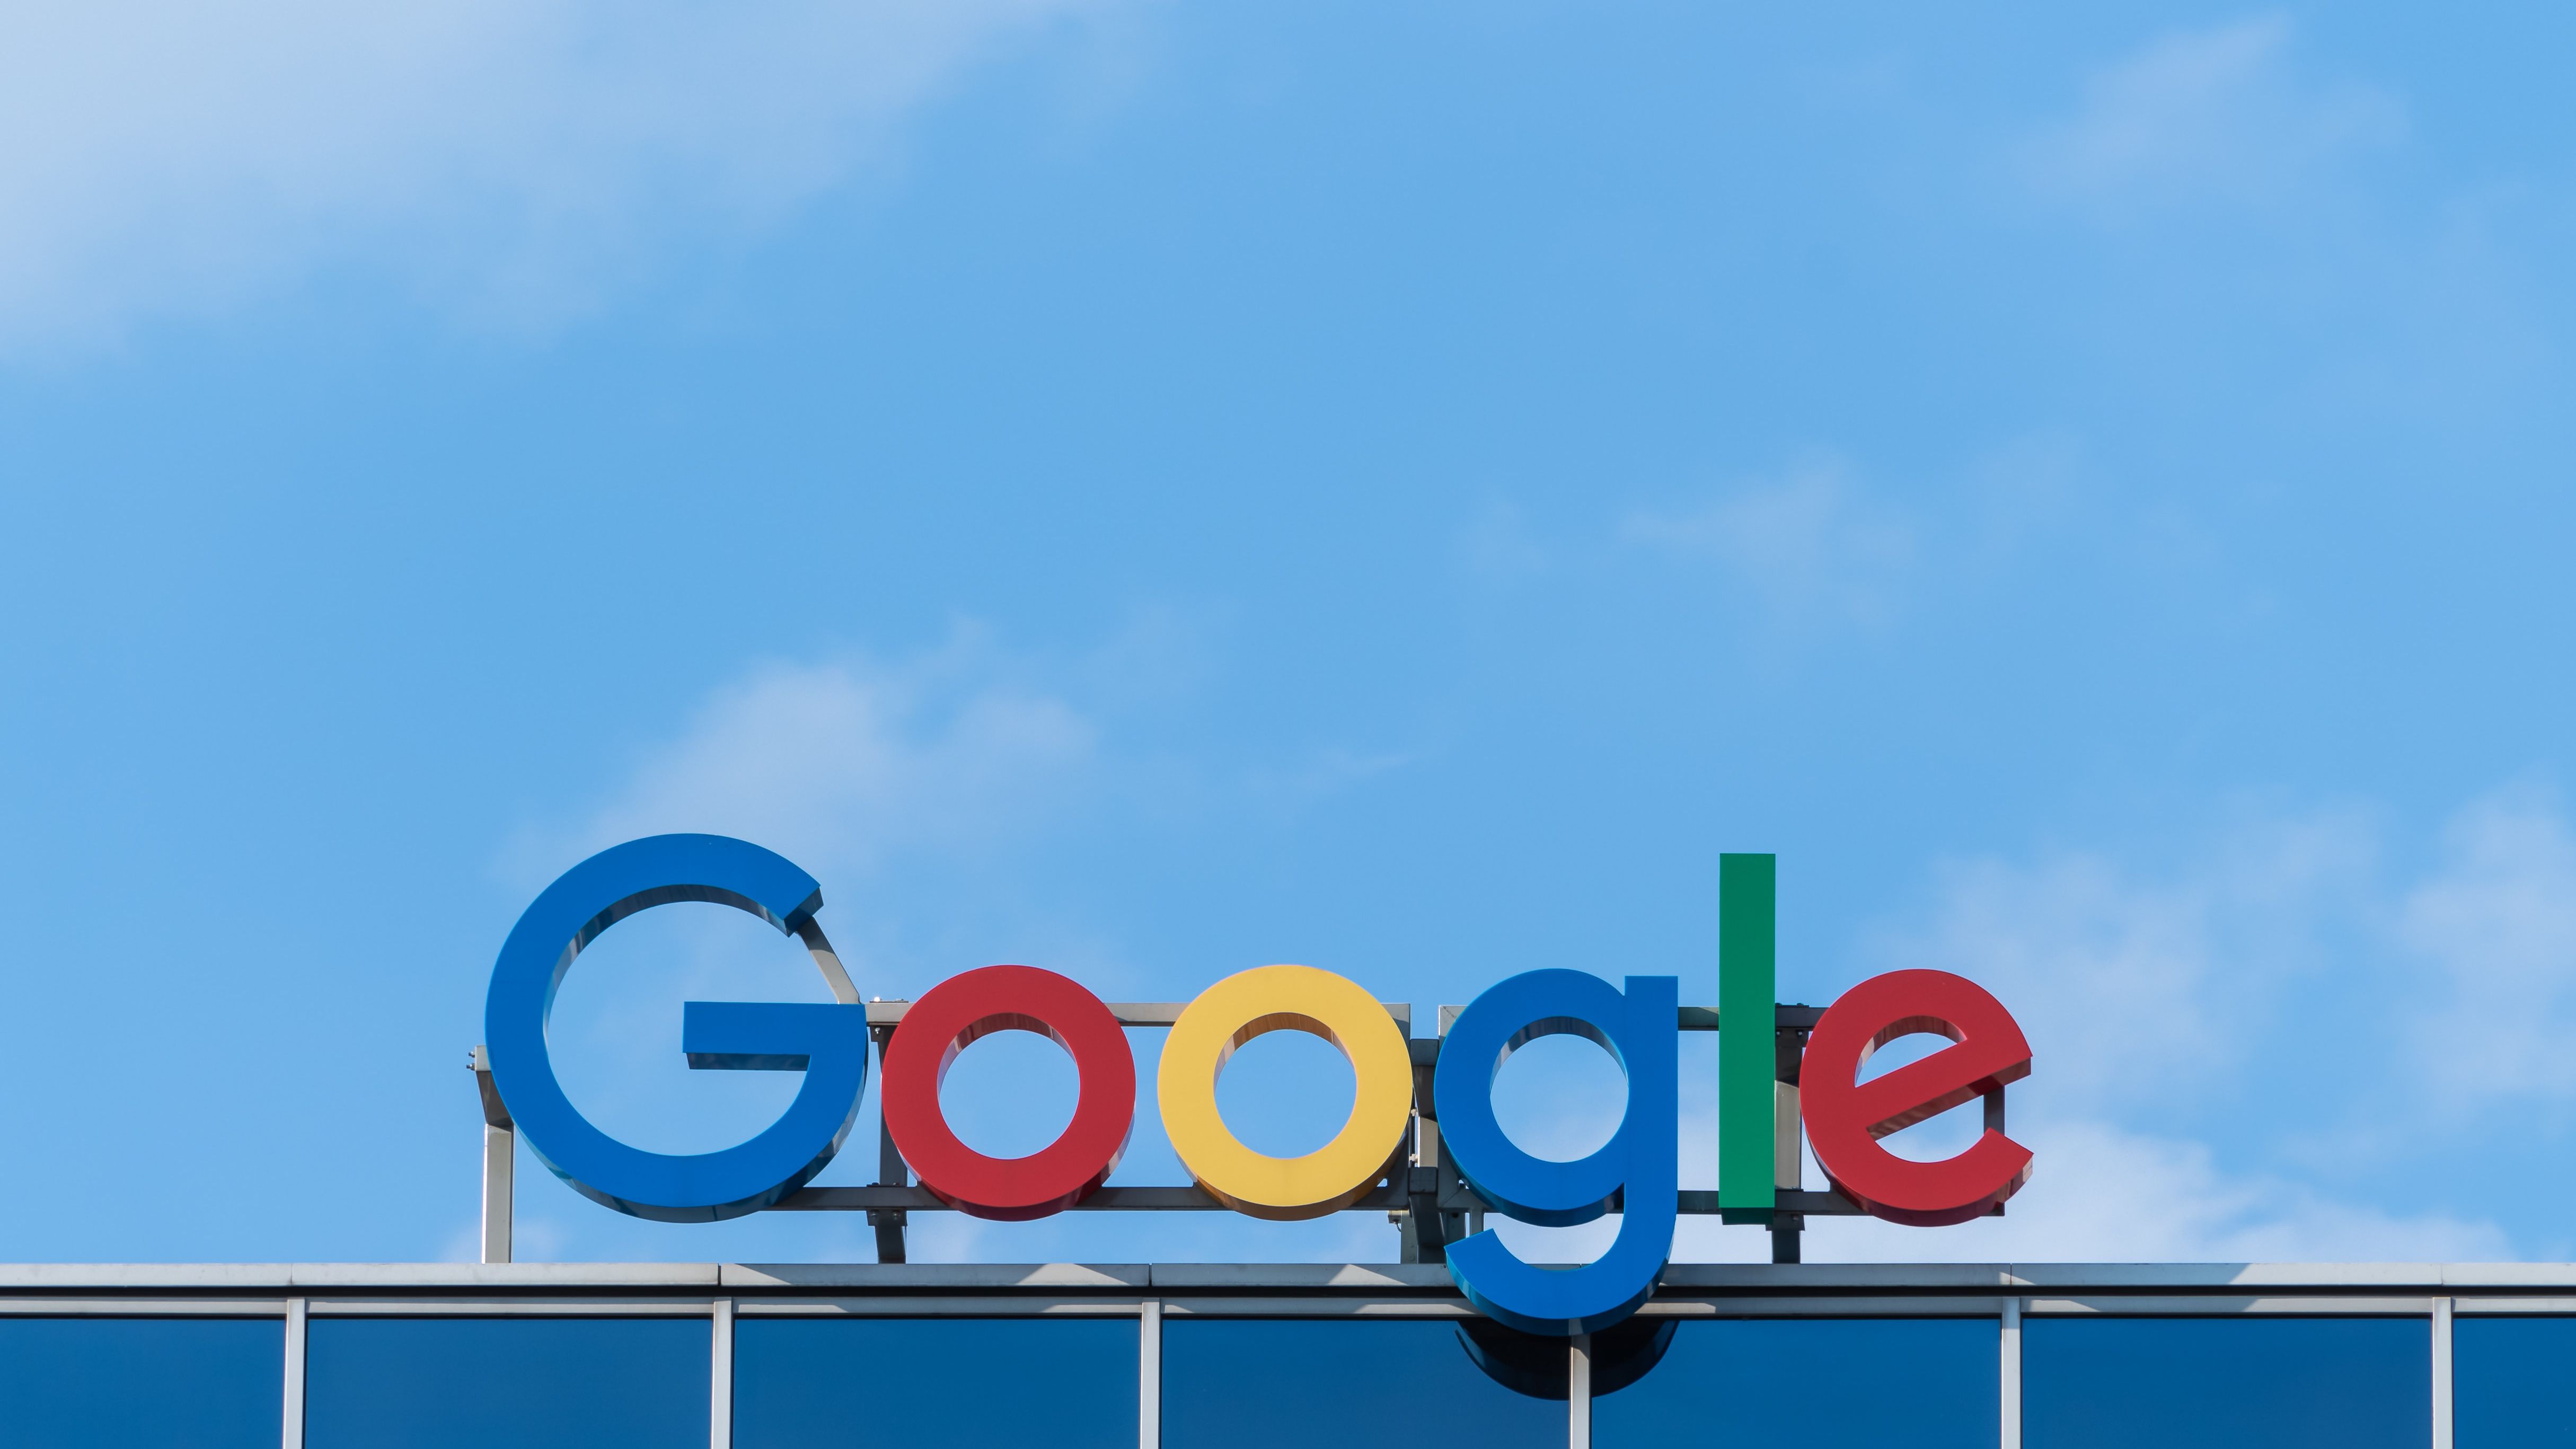 1º doodle do Google comemora 25 anos; conheça a história - Canaltech